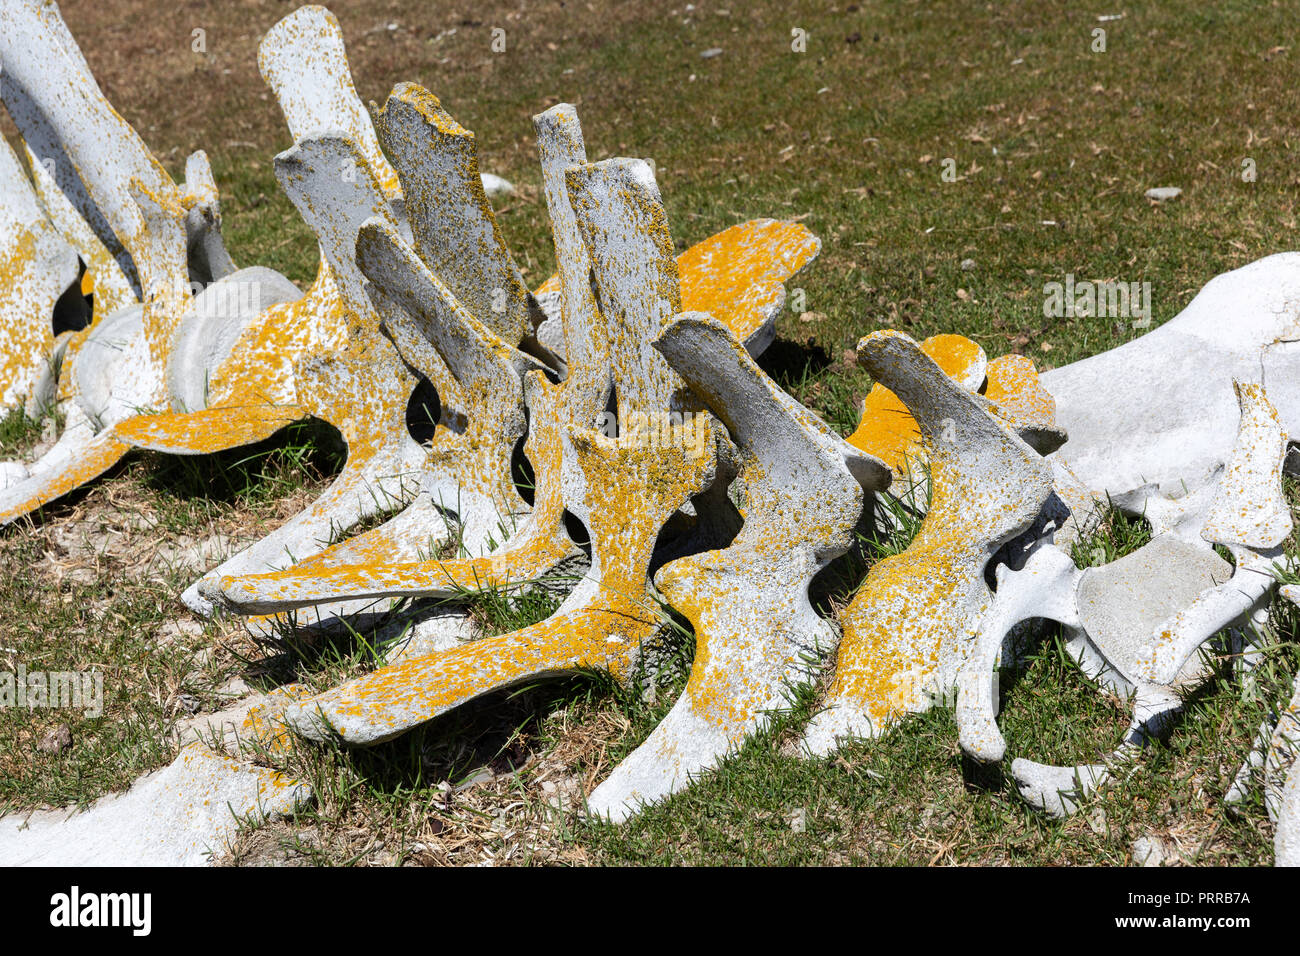 Les restes du squelette d'un rorqual boréal, jeunes échoués Balaenoptera borealis, rassemblés sur l'Île Saunders, Falklands Banque D'Images